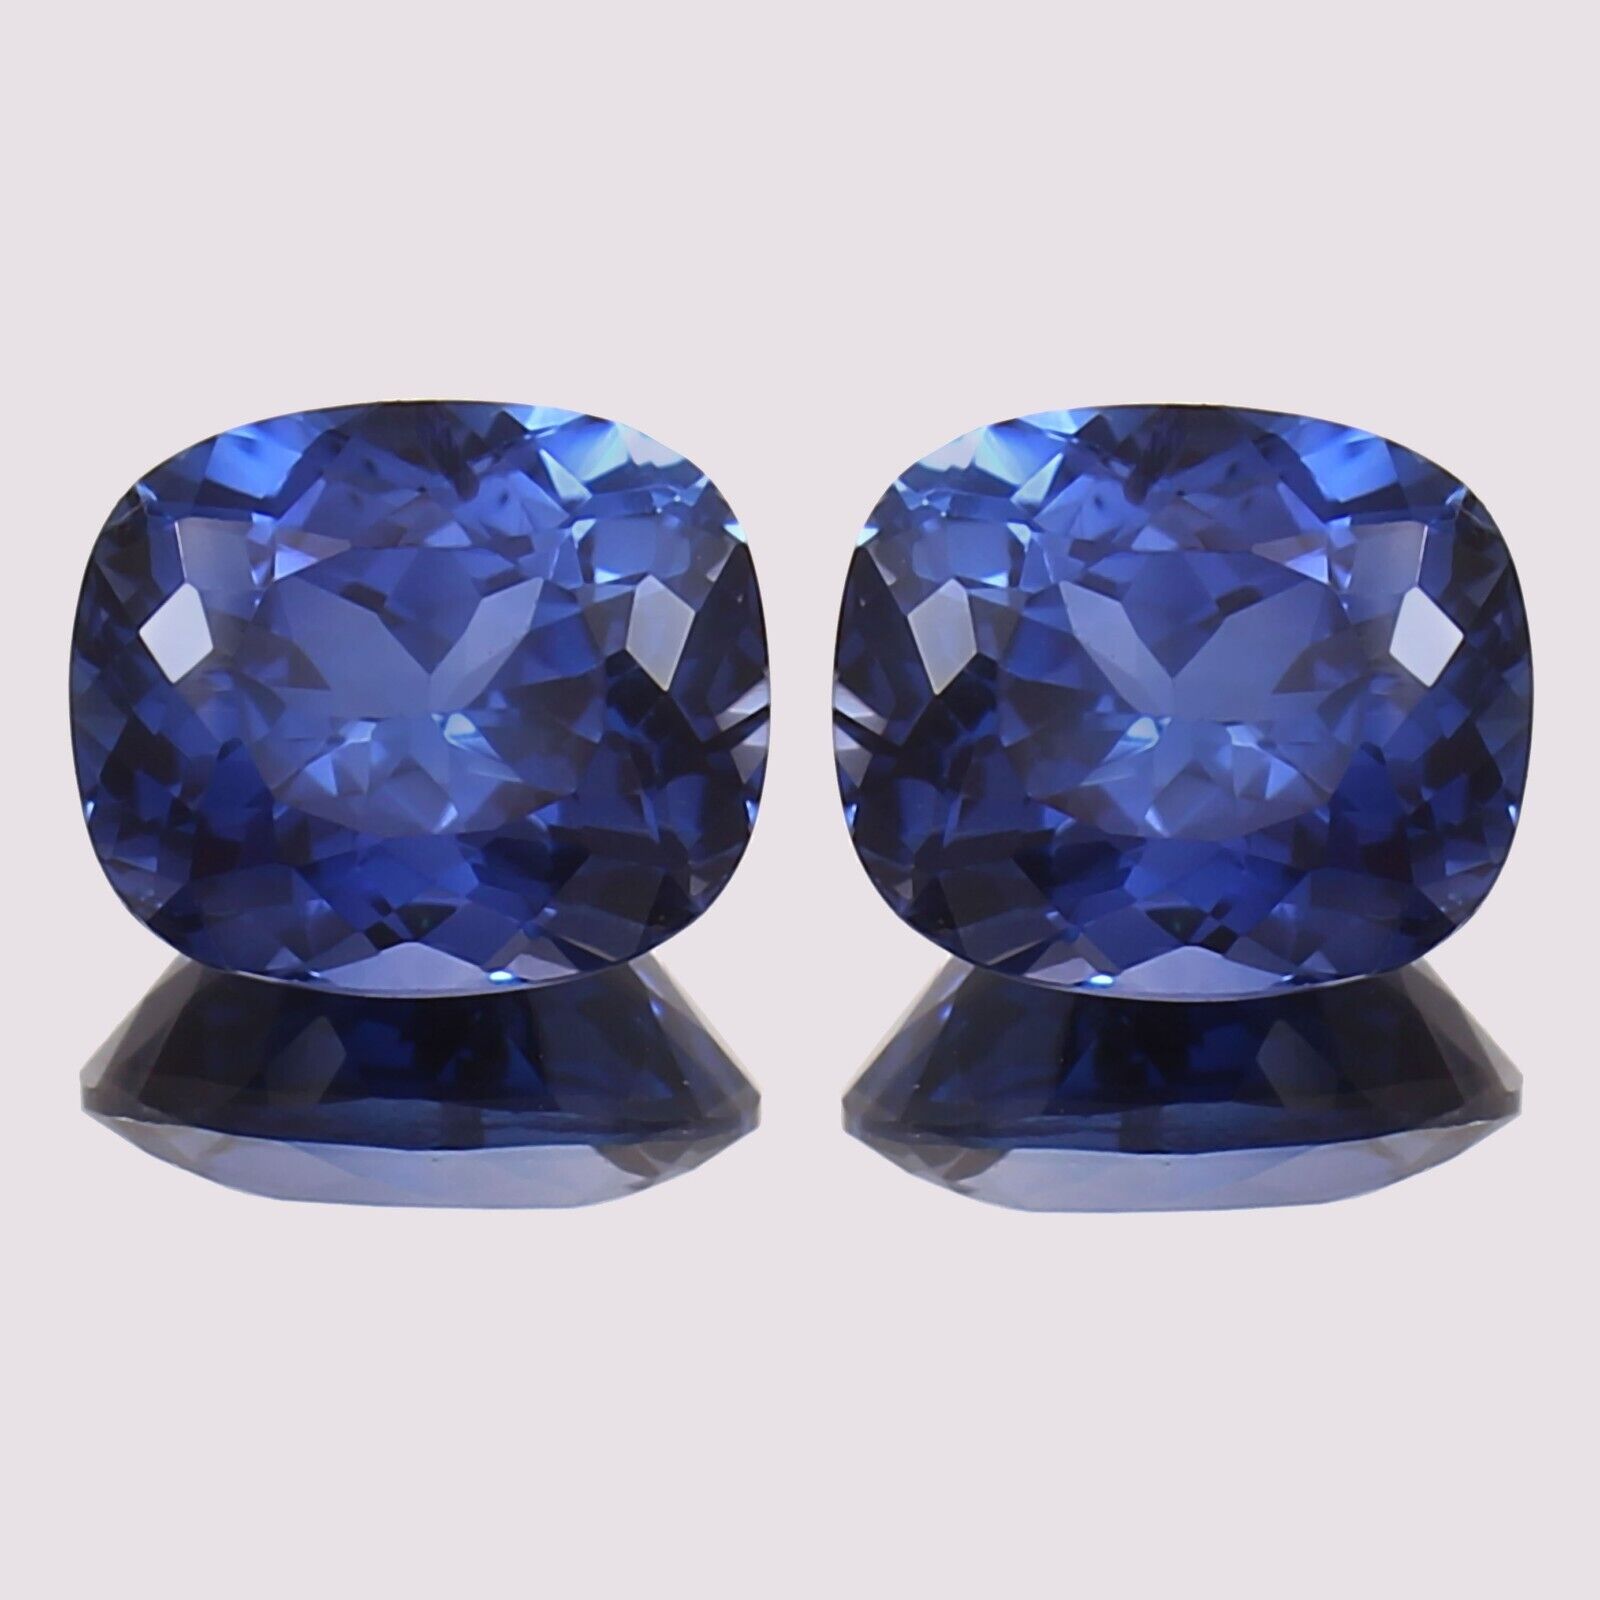 Natural Ceylon Blue Sapphire 8 x 6 MM Cushion Cut Loose Gemstone Matching Pair